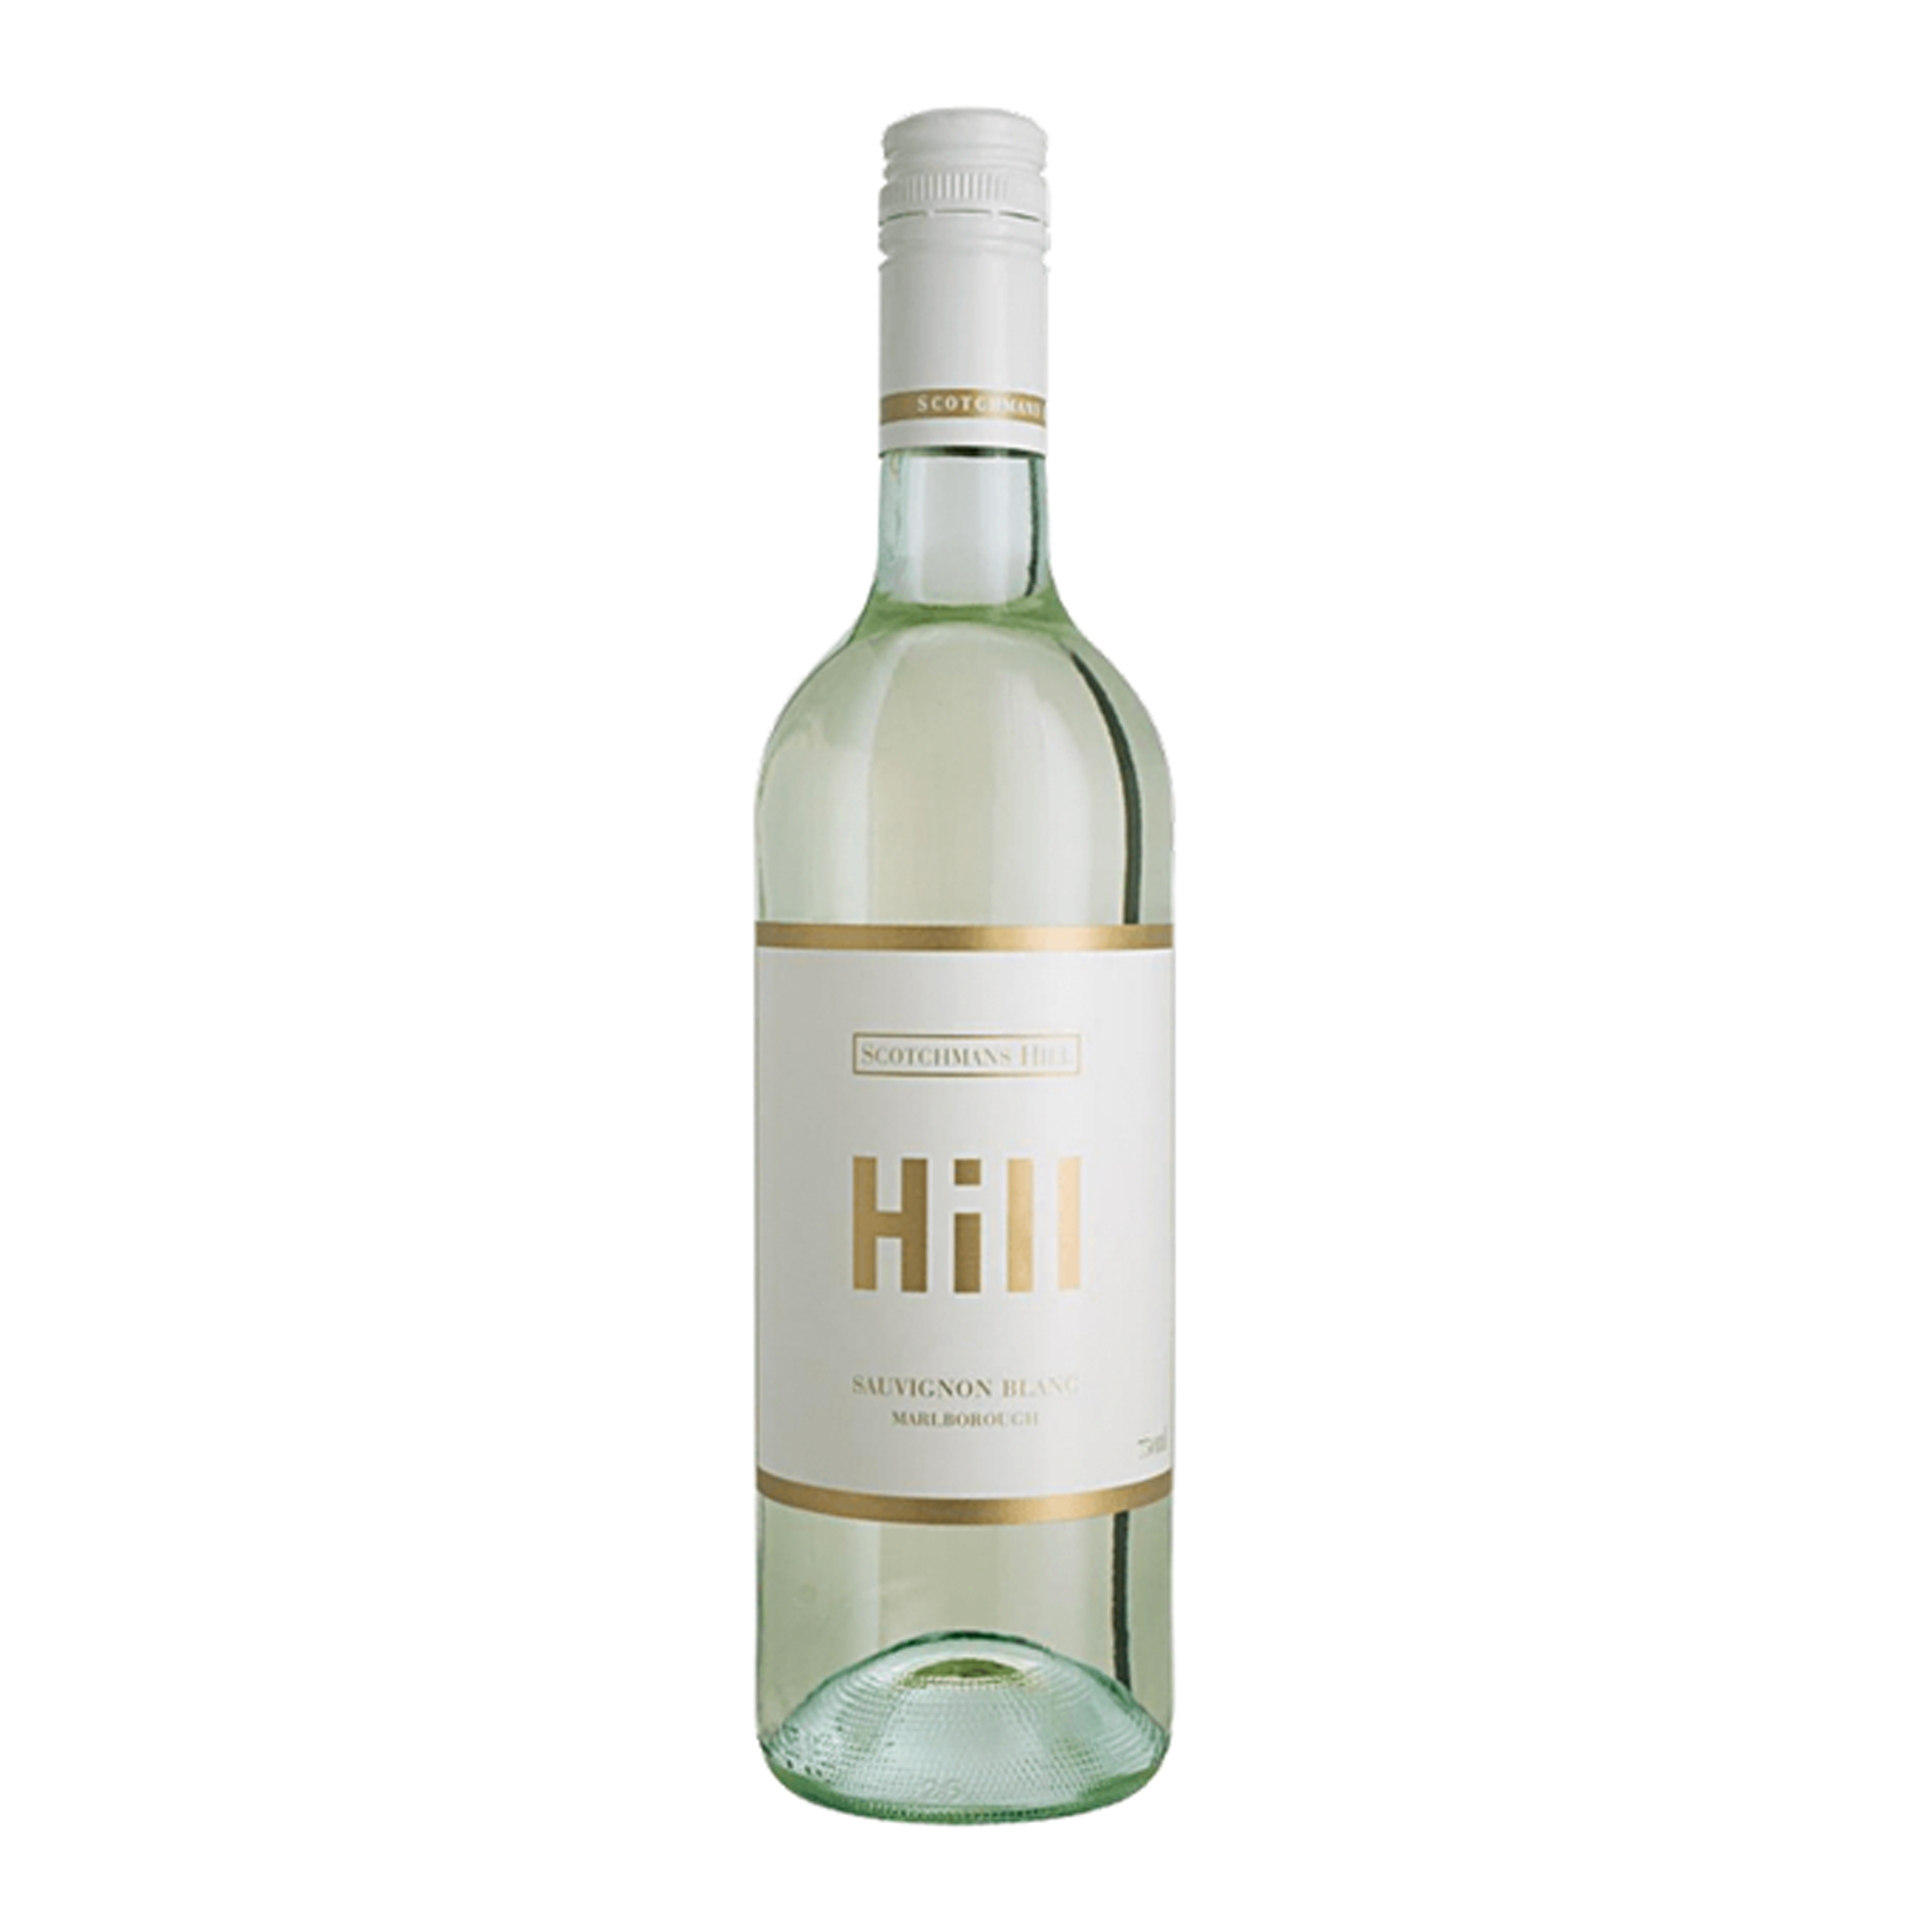 william hill sauvignon blanc review